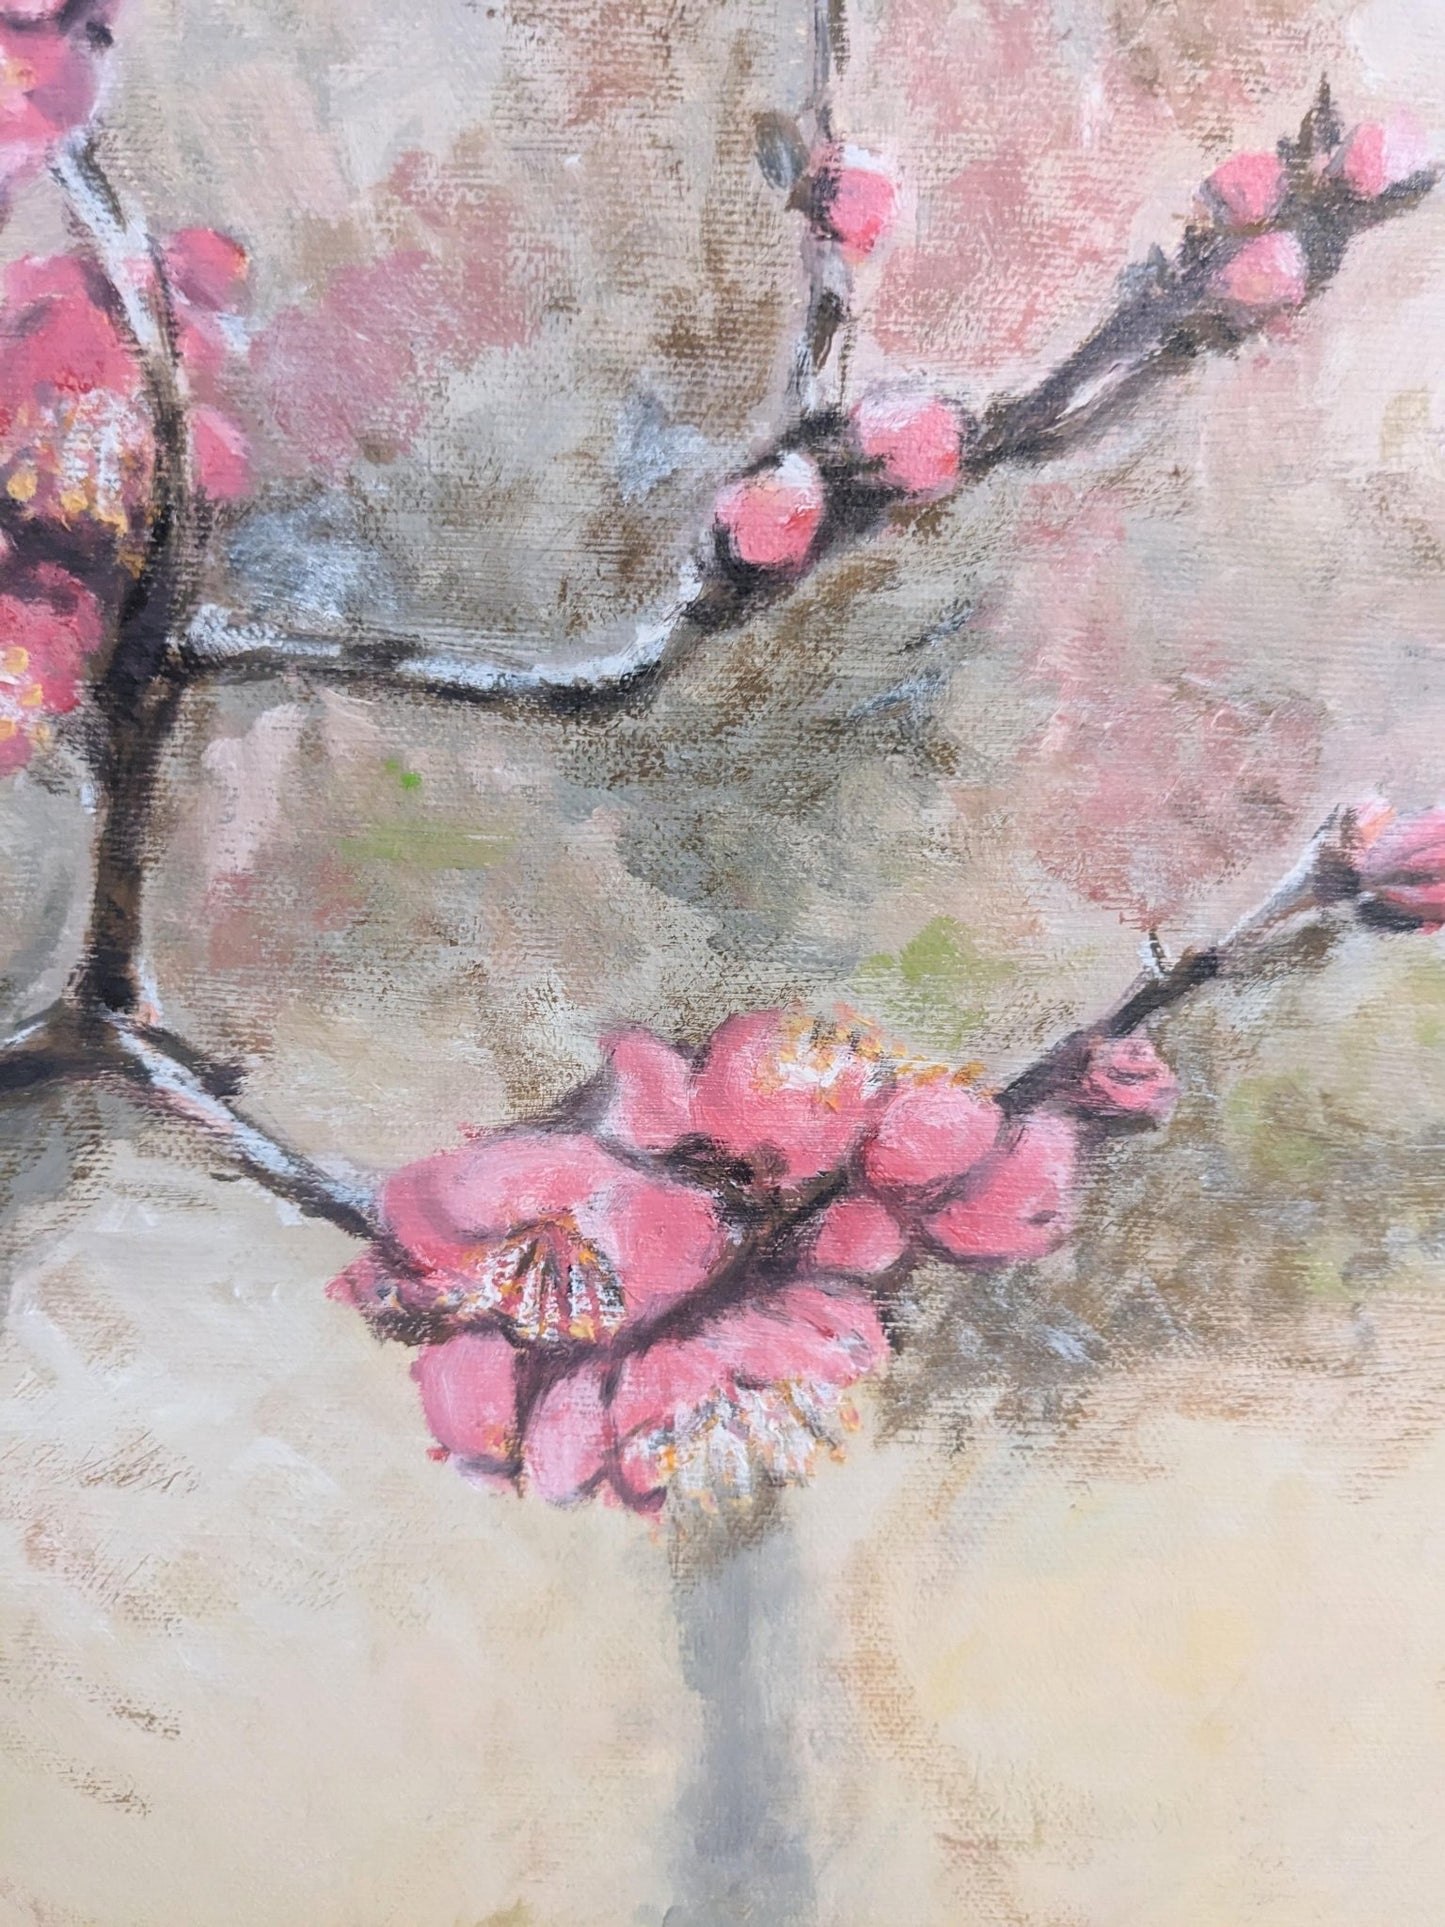 『梅（Plum tree in season）』 - FROM ARTIST